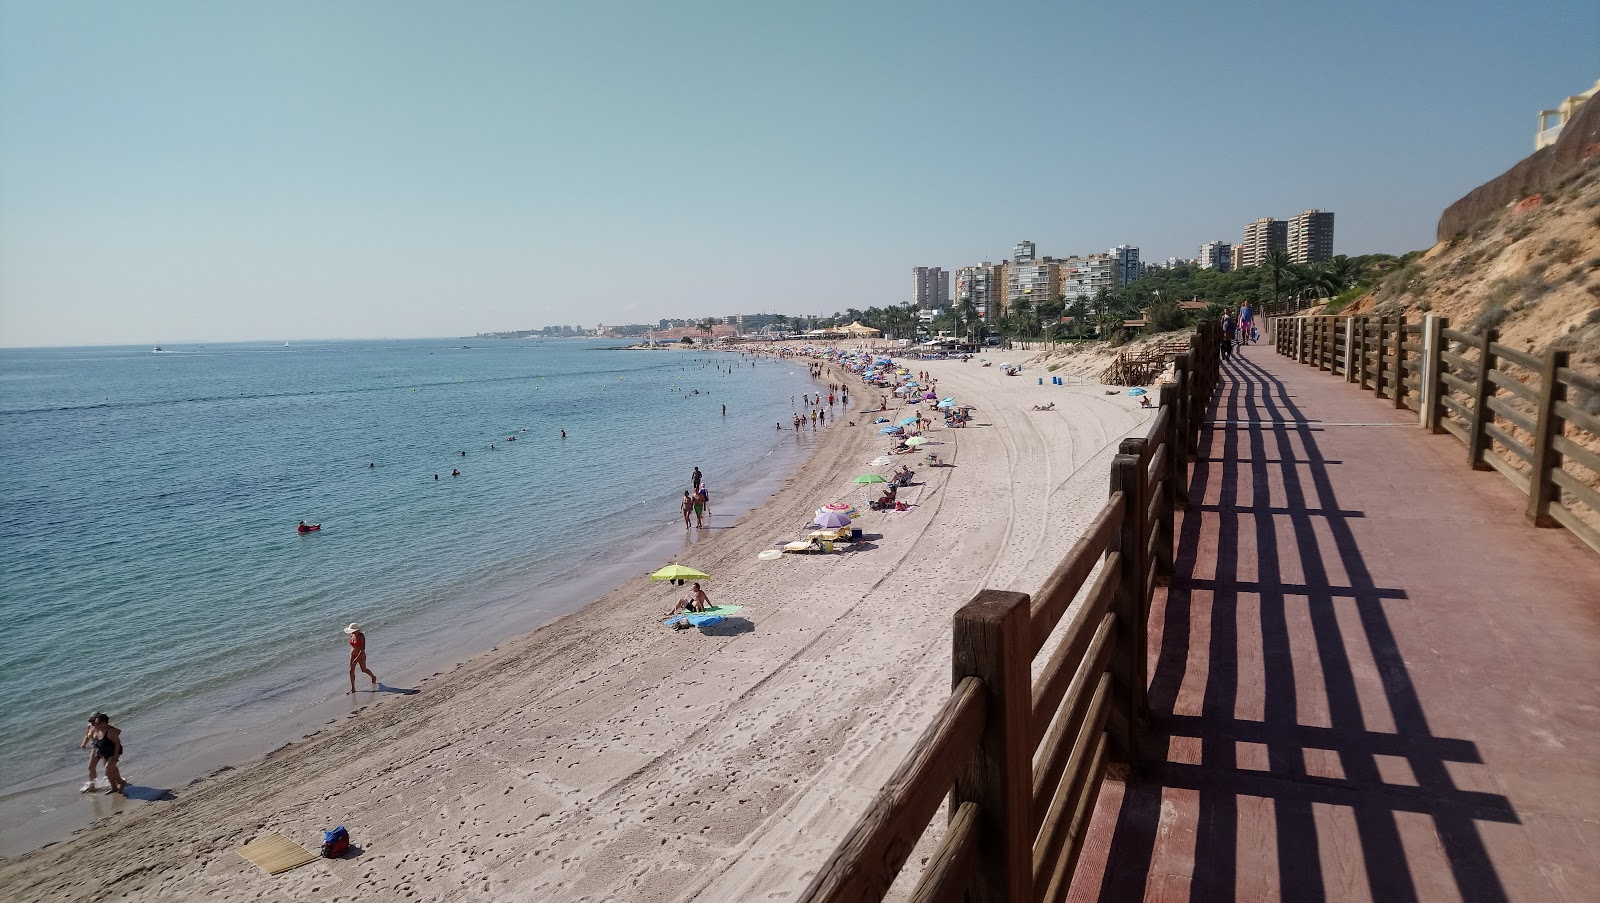 Campoamor Plajı'in fotoğrafı geniş ile birlikte